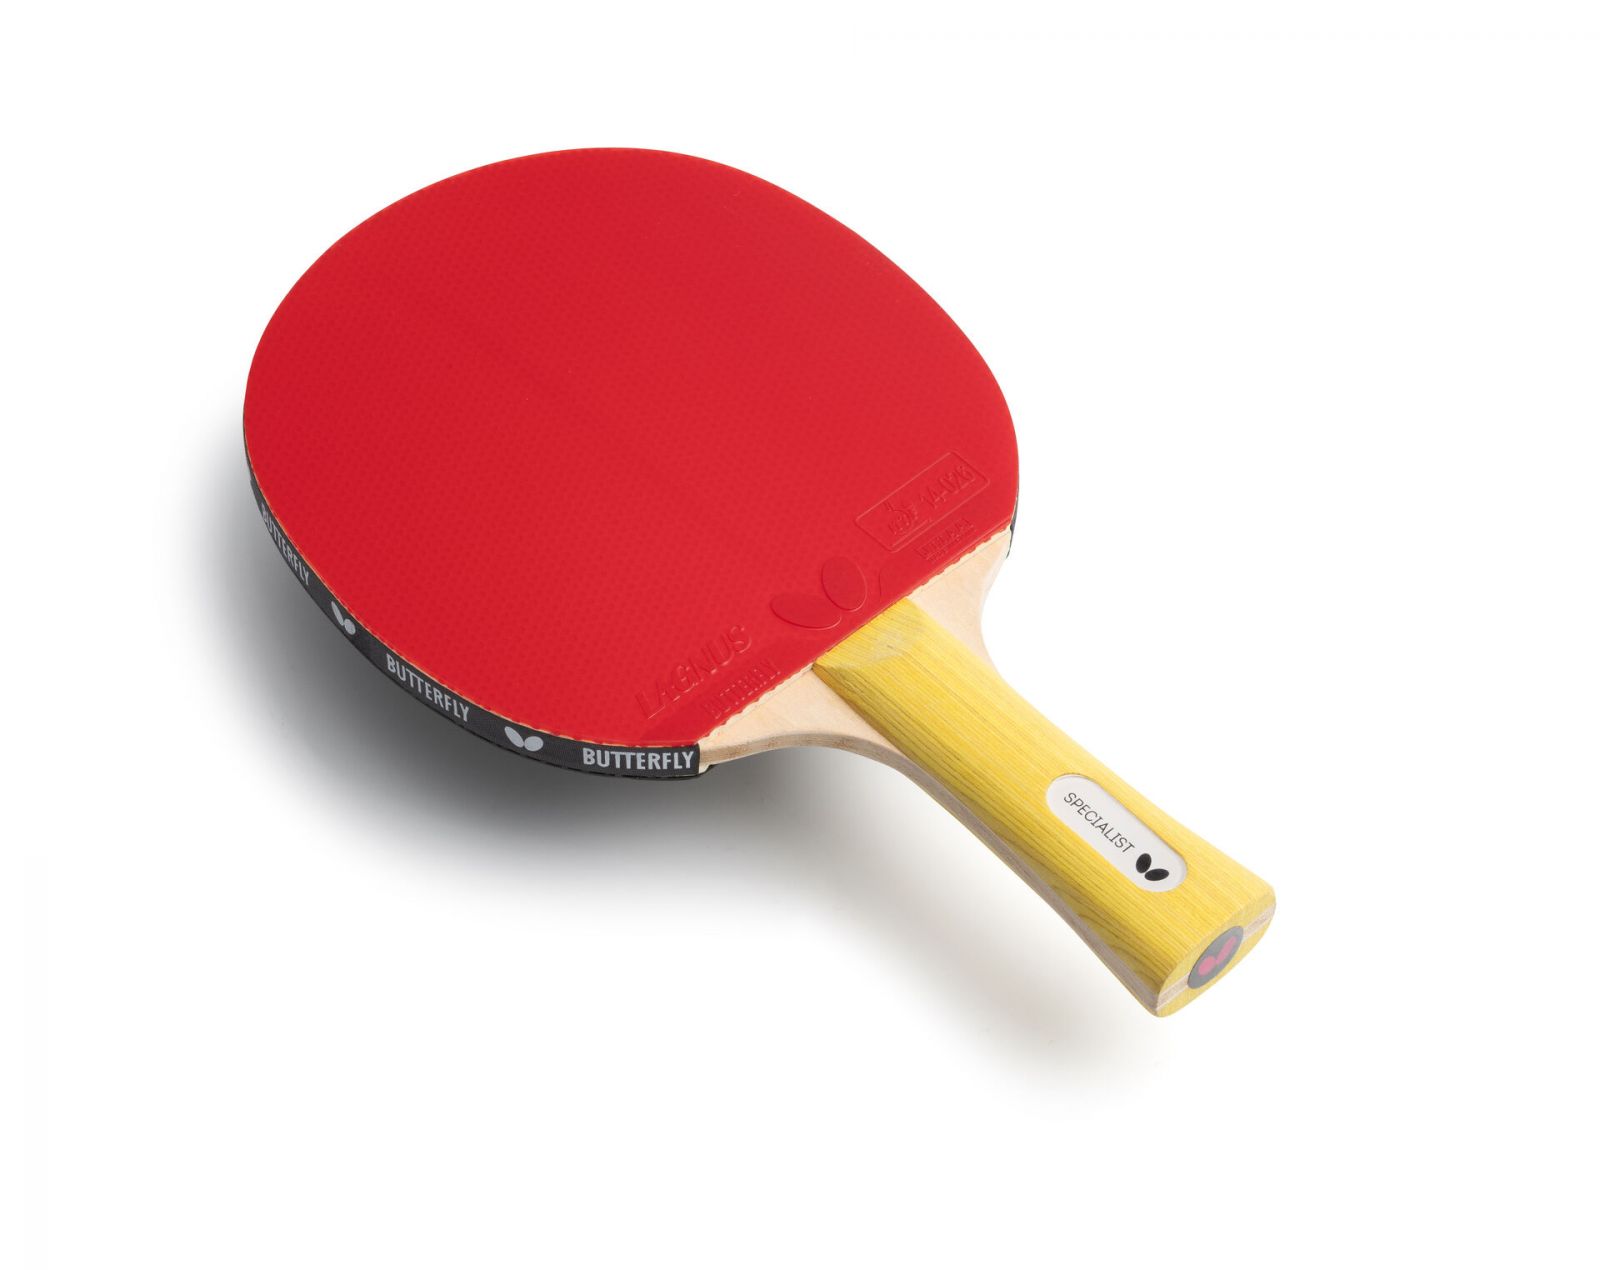 3 Consejos para el mantenimiento de palas de ping pong